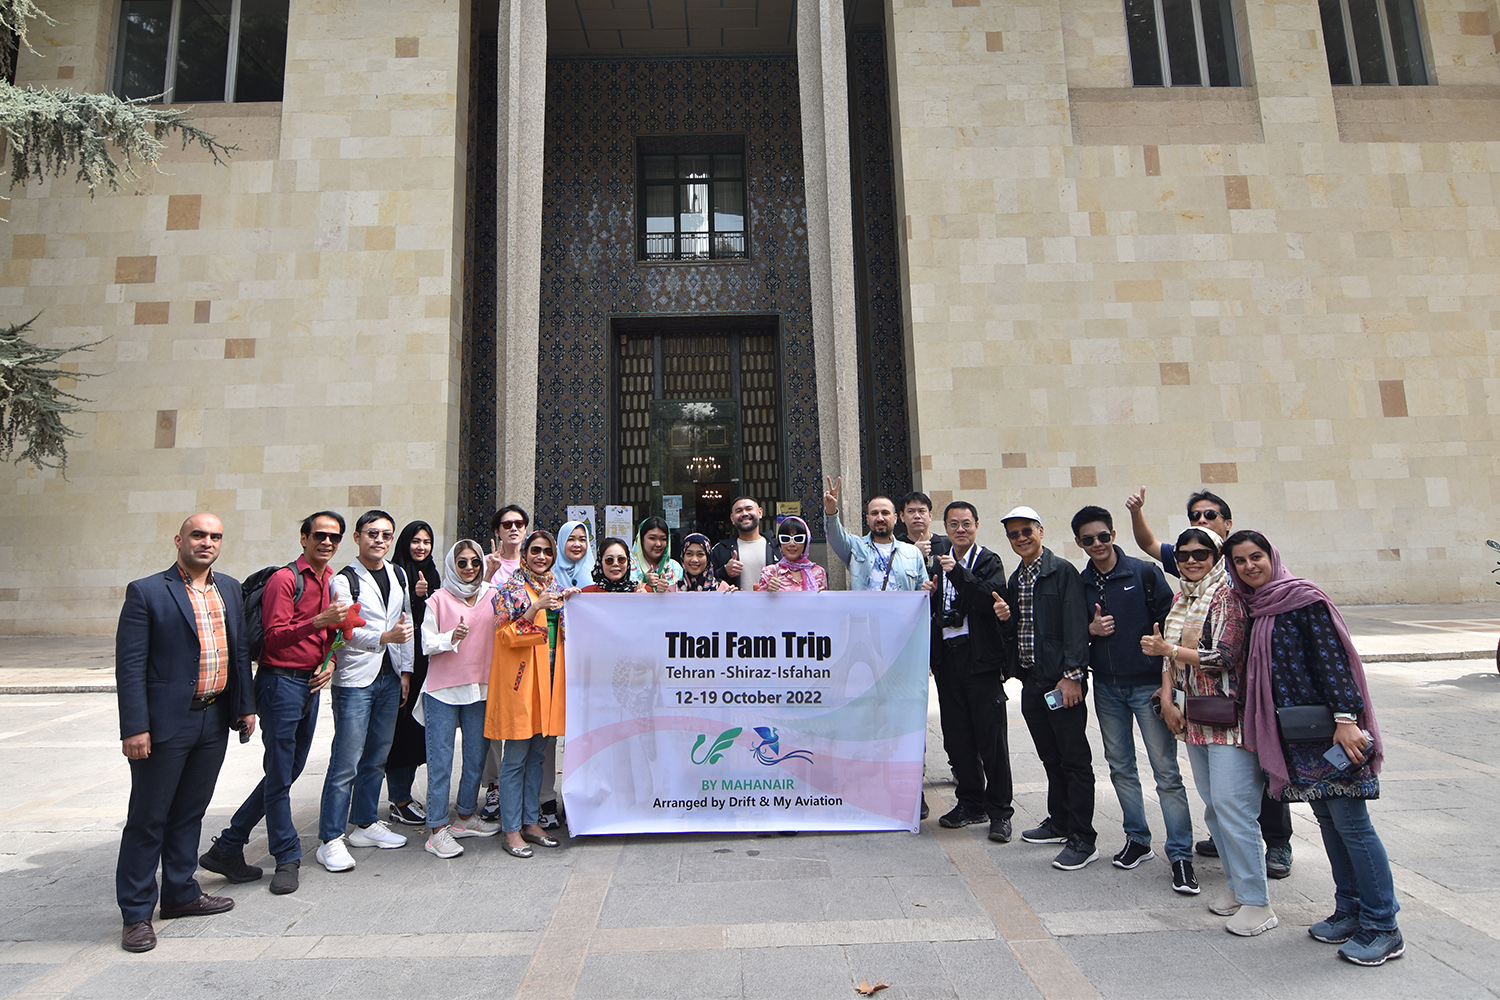 تور آشناسازی تهران برای 20 فعال گردشگری از کشور تایلند